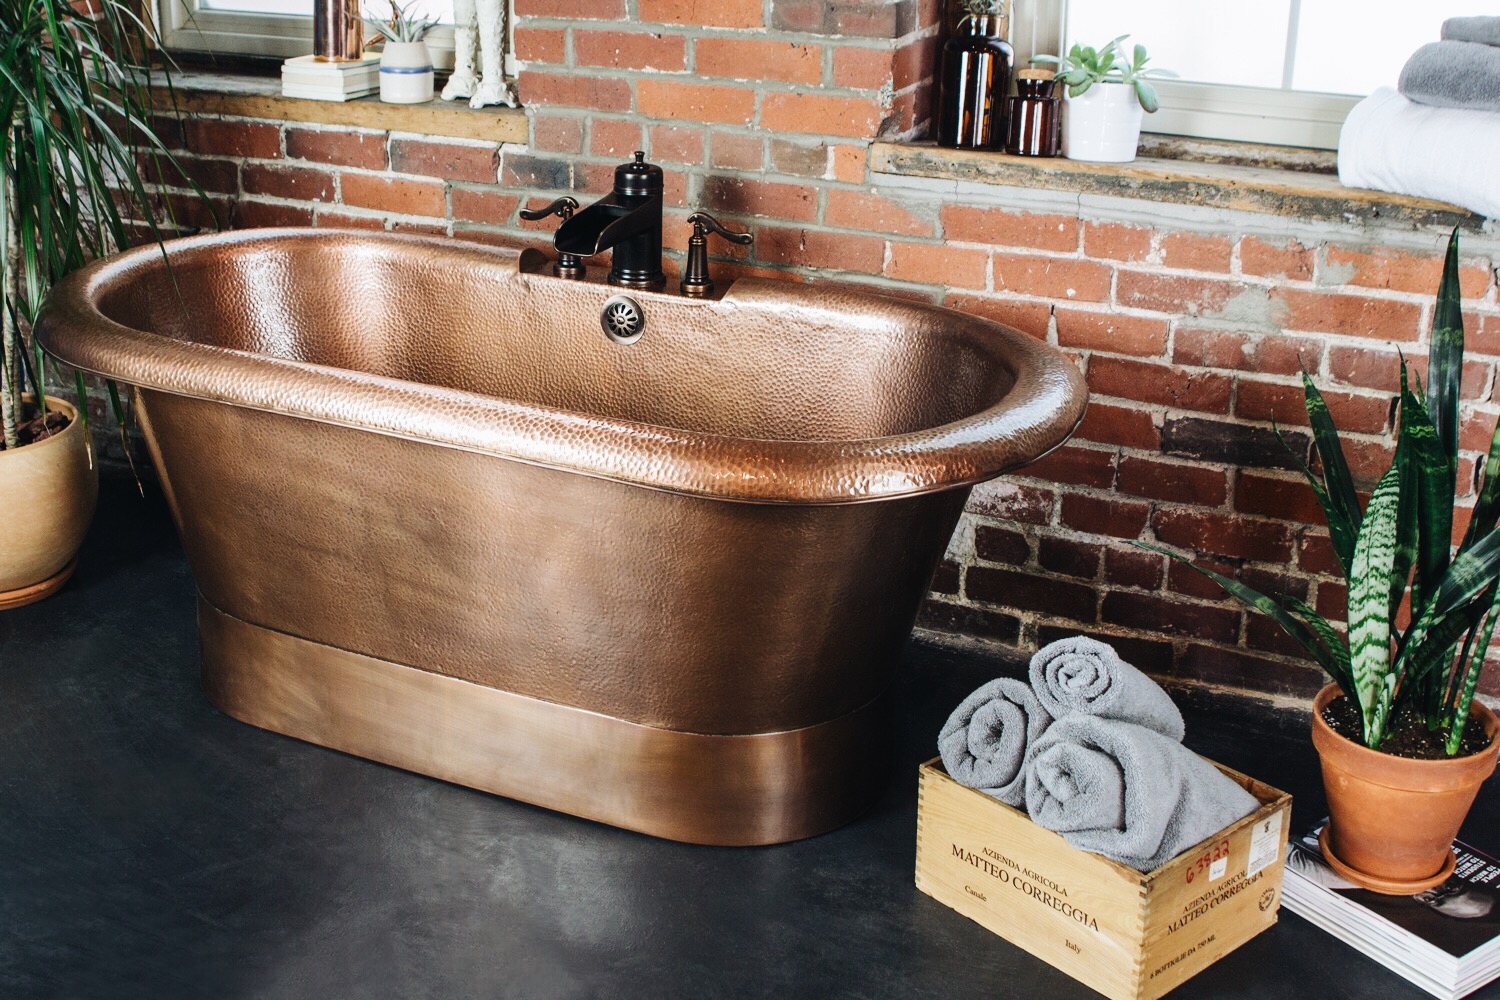 The Thales Copper Bathtub Designing, Sinkology Copper Bathtub